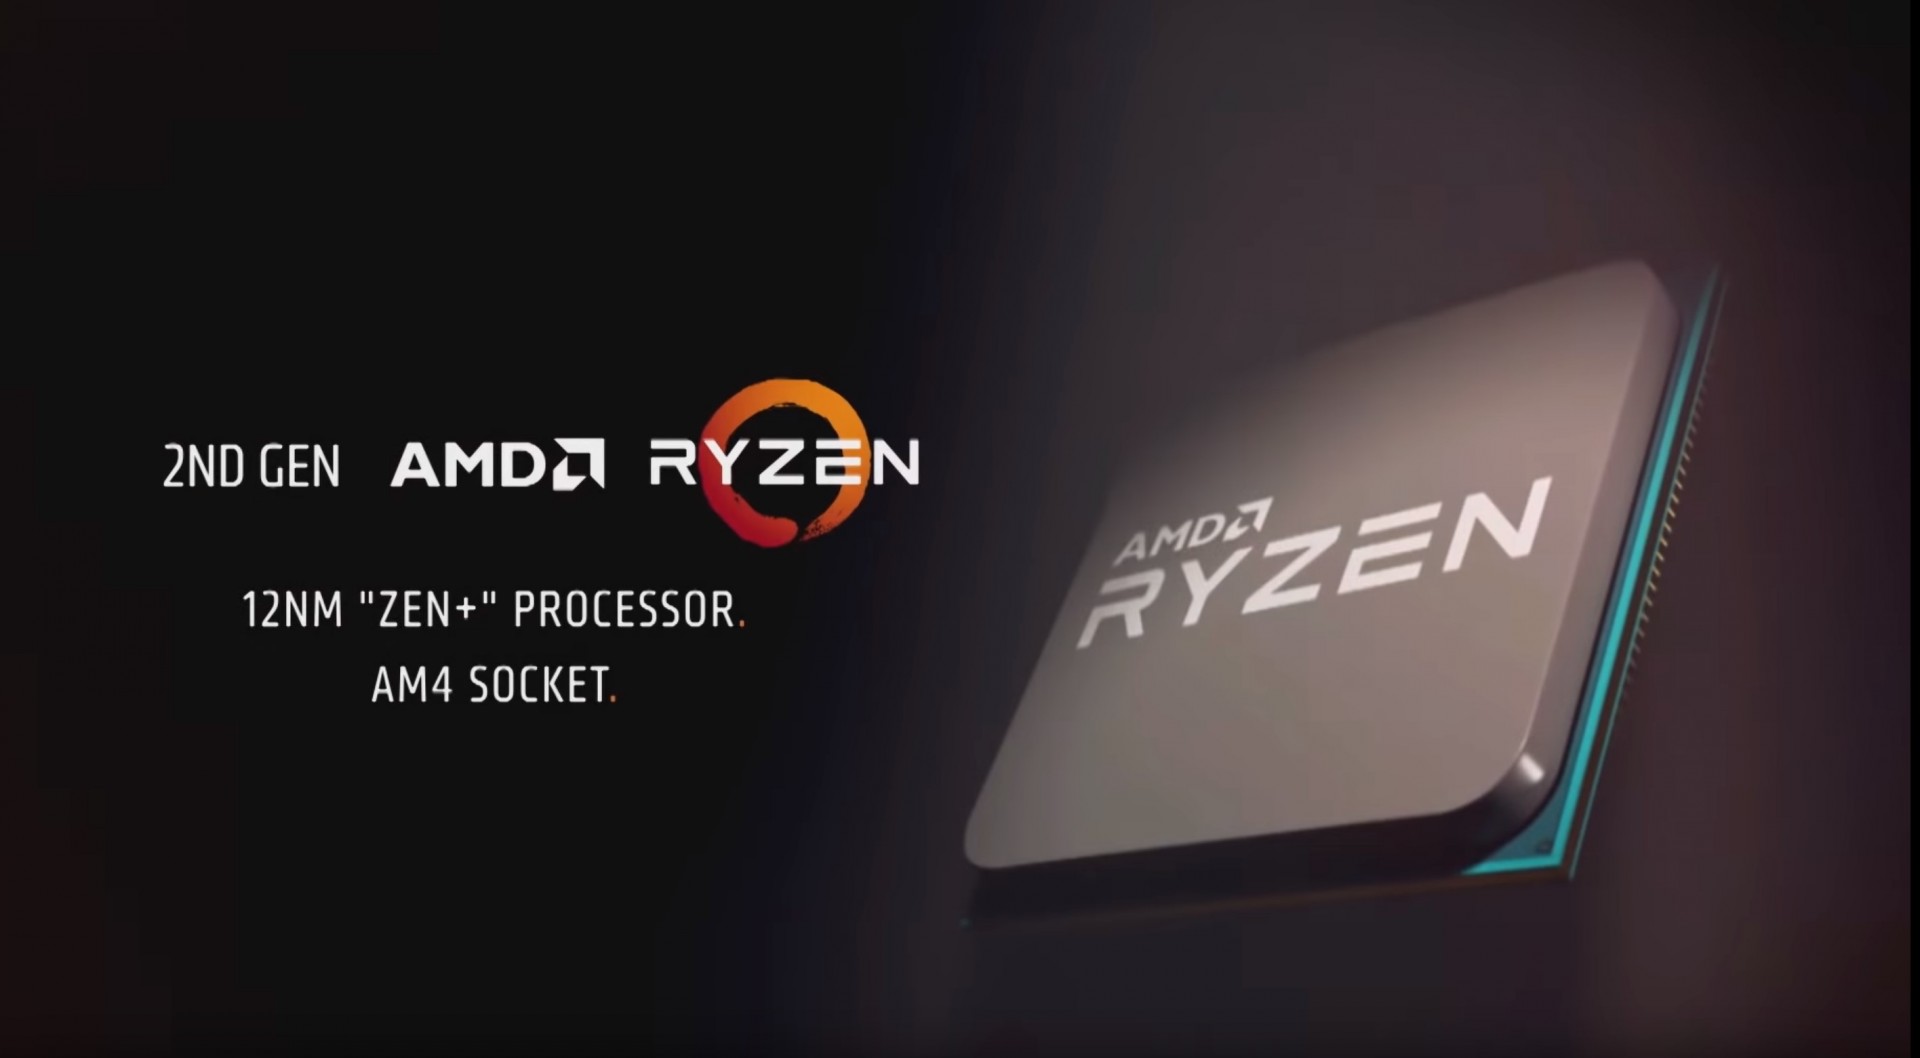 AMD RYZEN processor one year